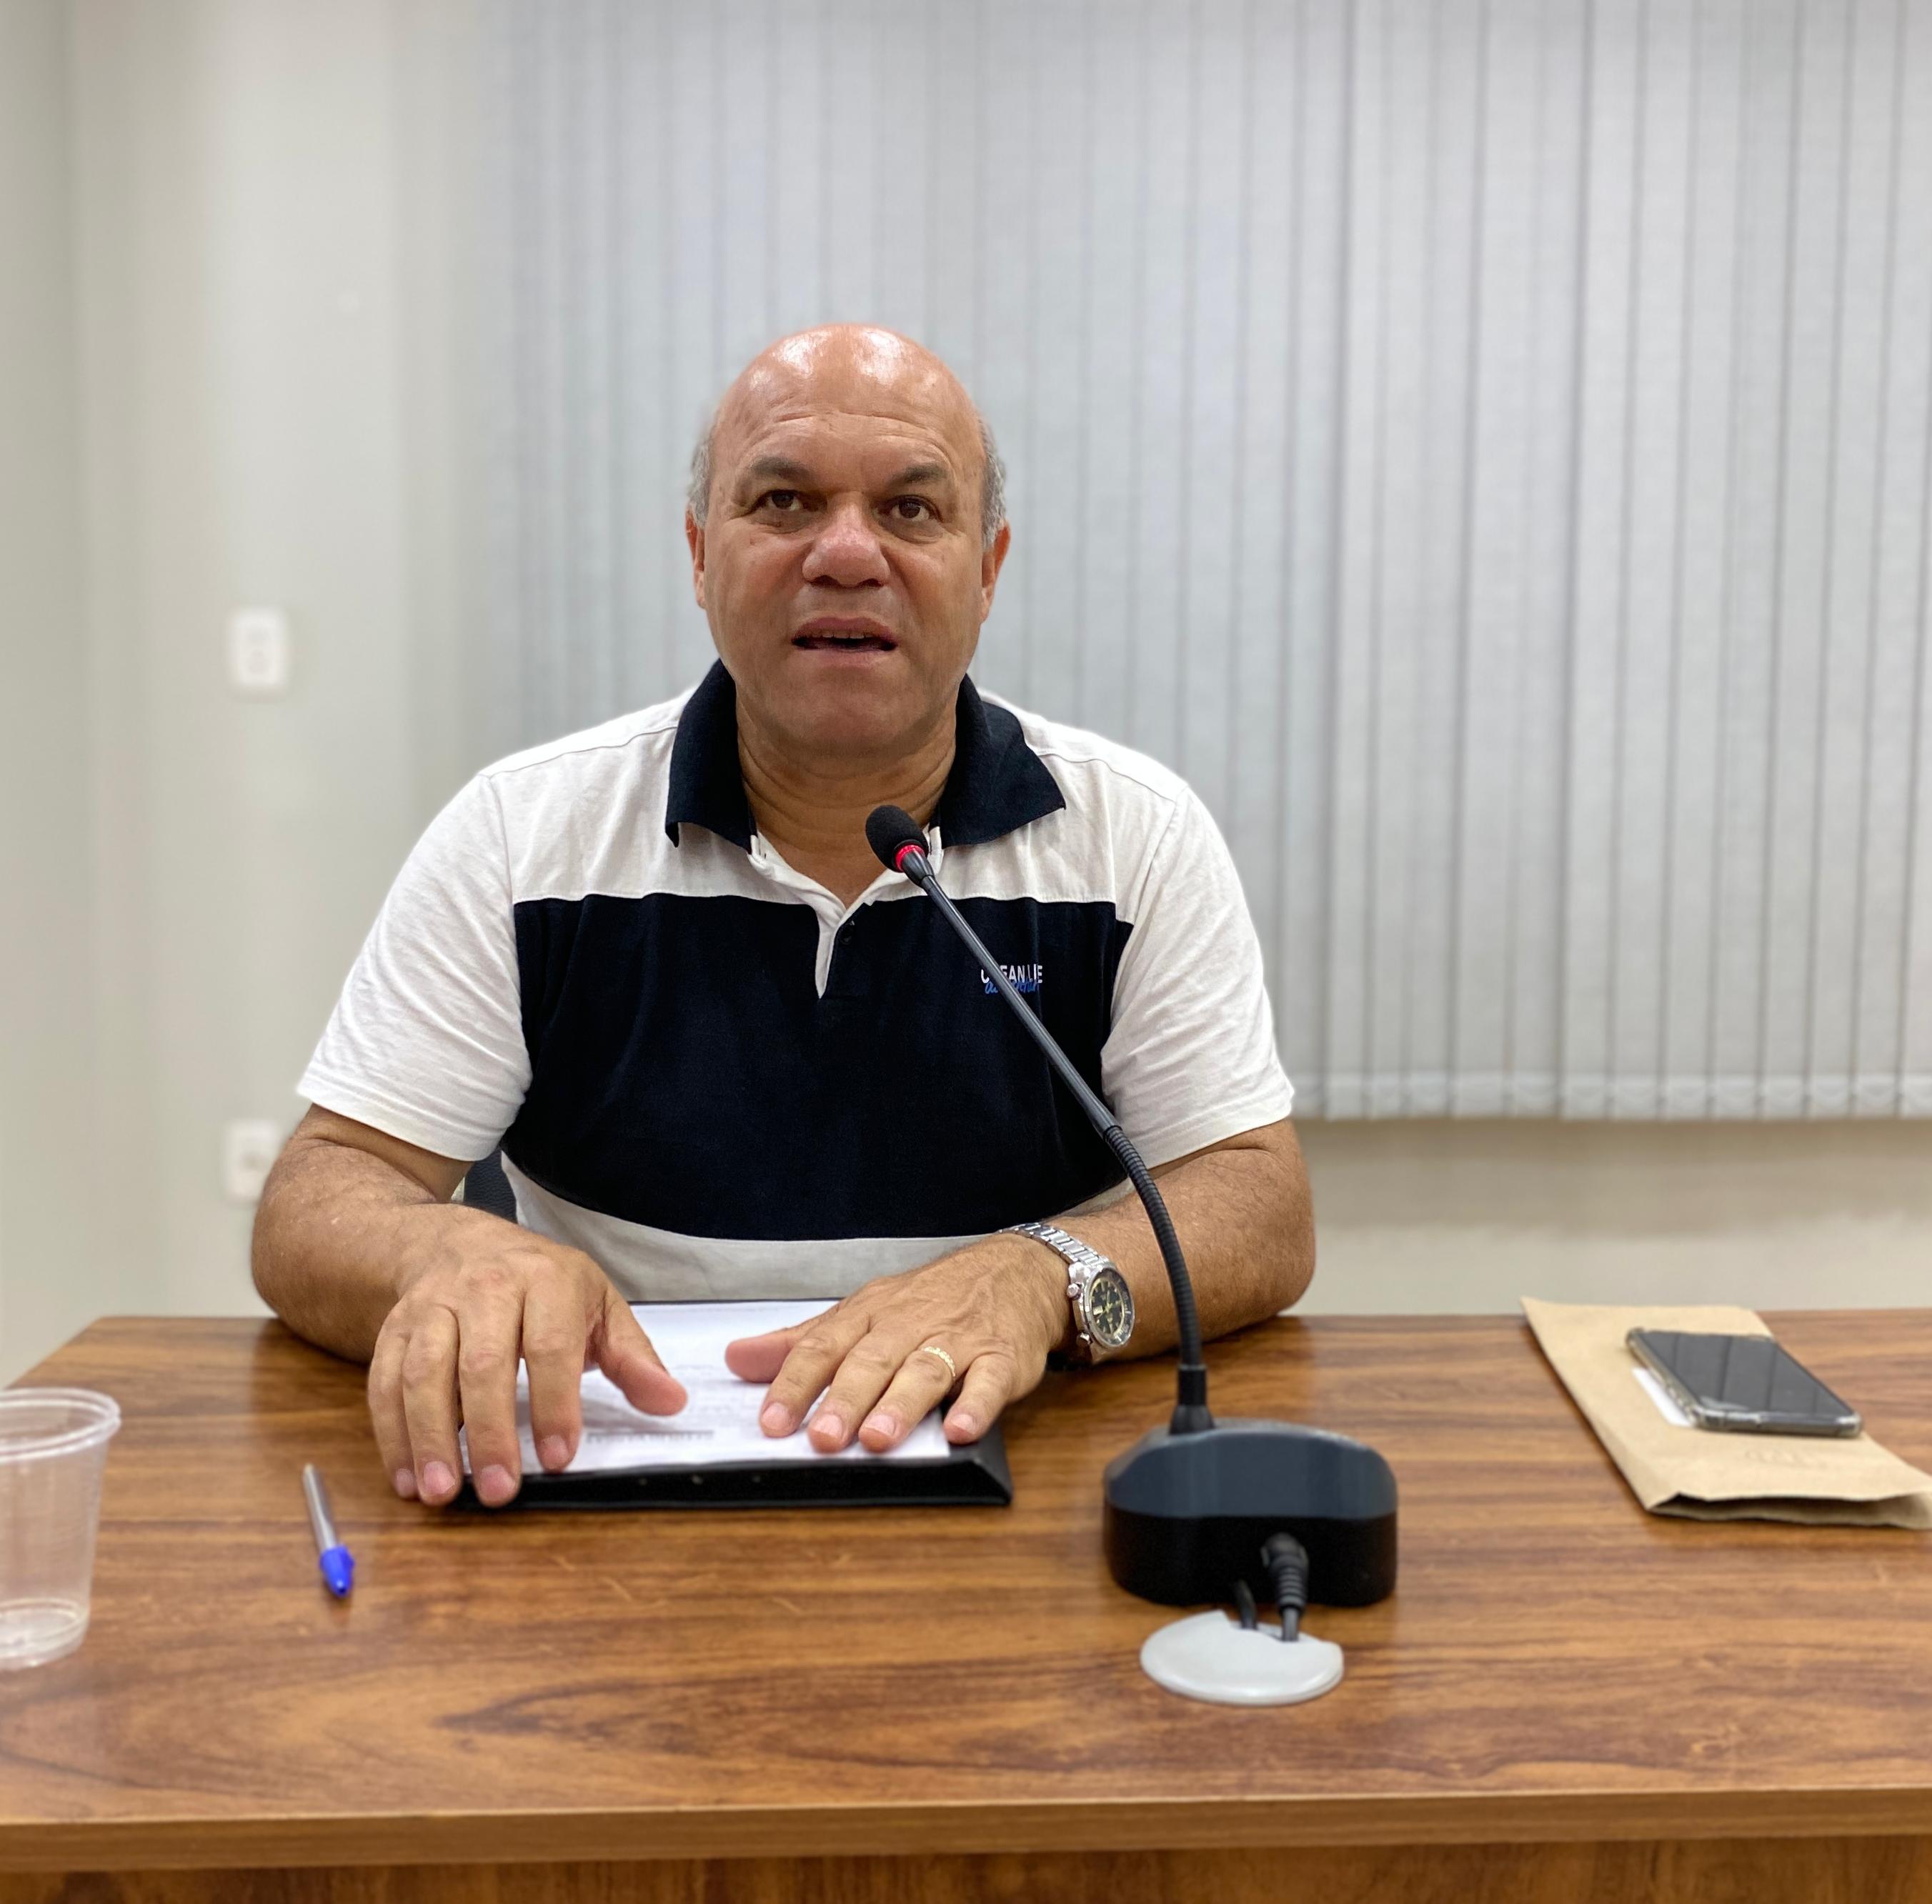 Câmara de Vereadores de Getúlio Vargas aprova pedido de recapeamento asfáltico na Rua Arcibaldo Somenzi